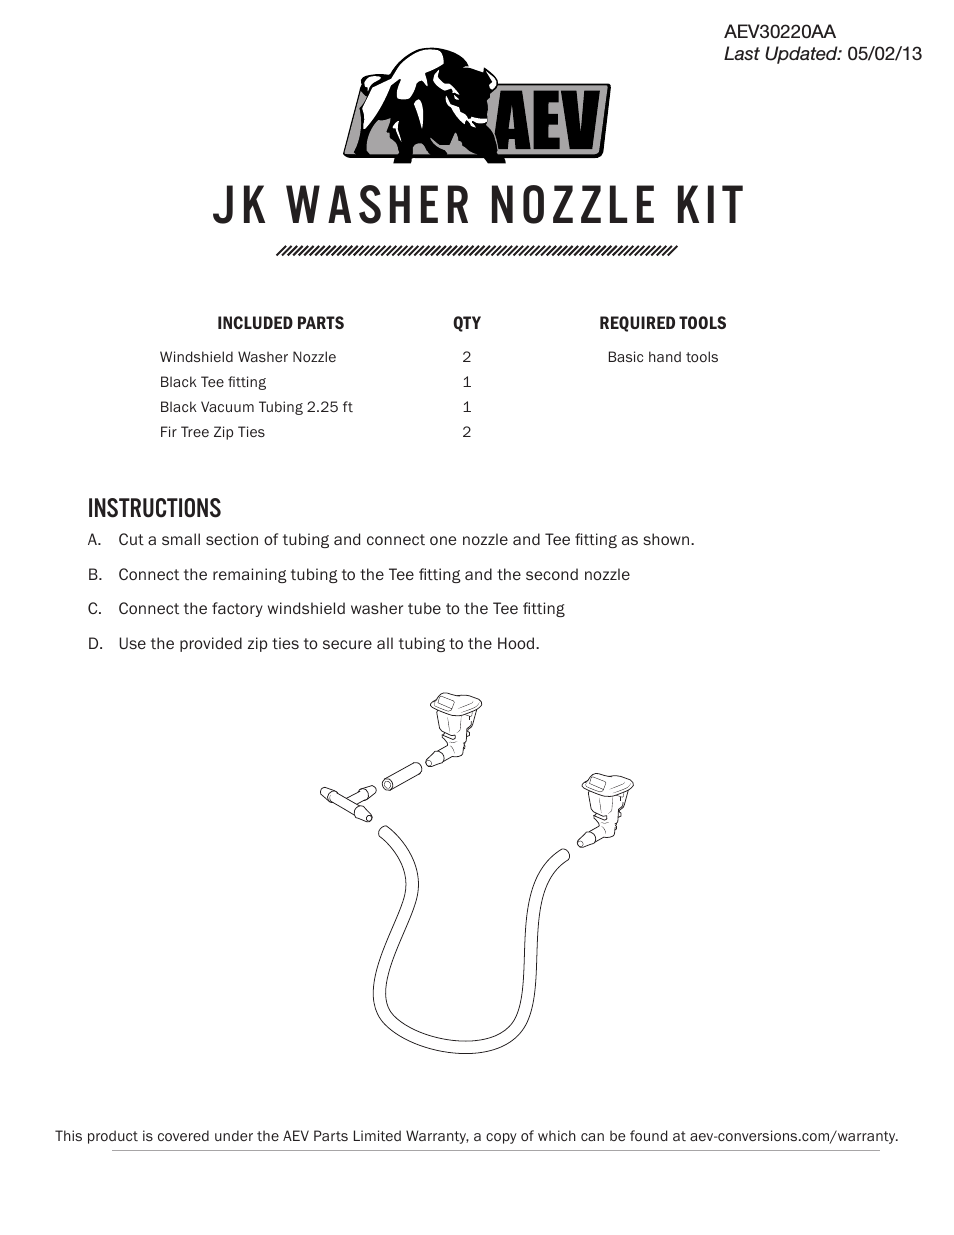 Jk WASHER Nozzle Kit